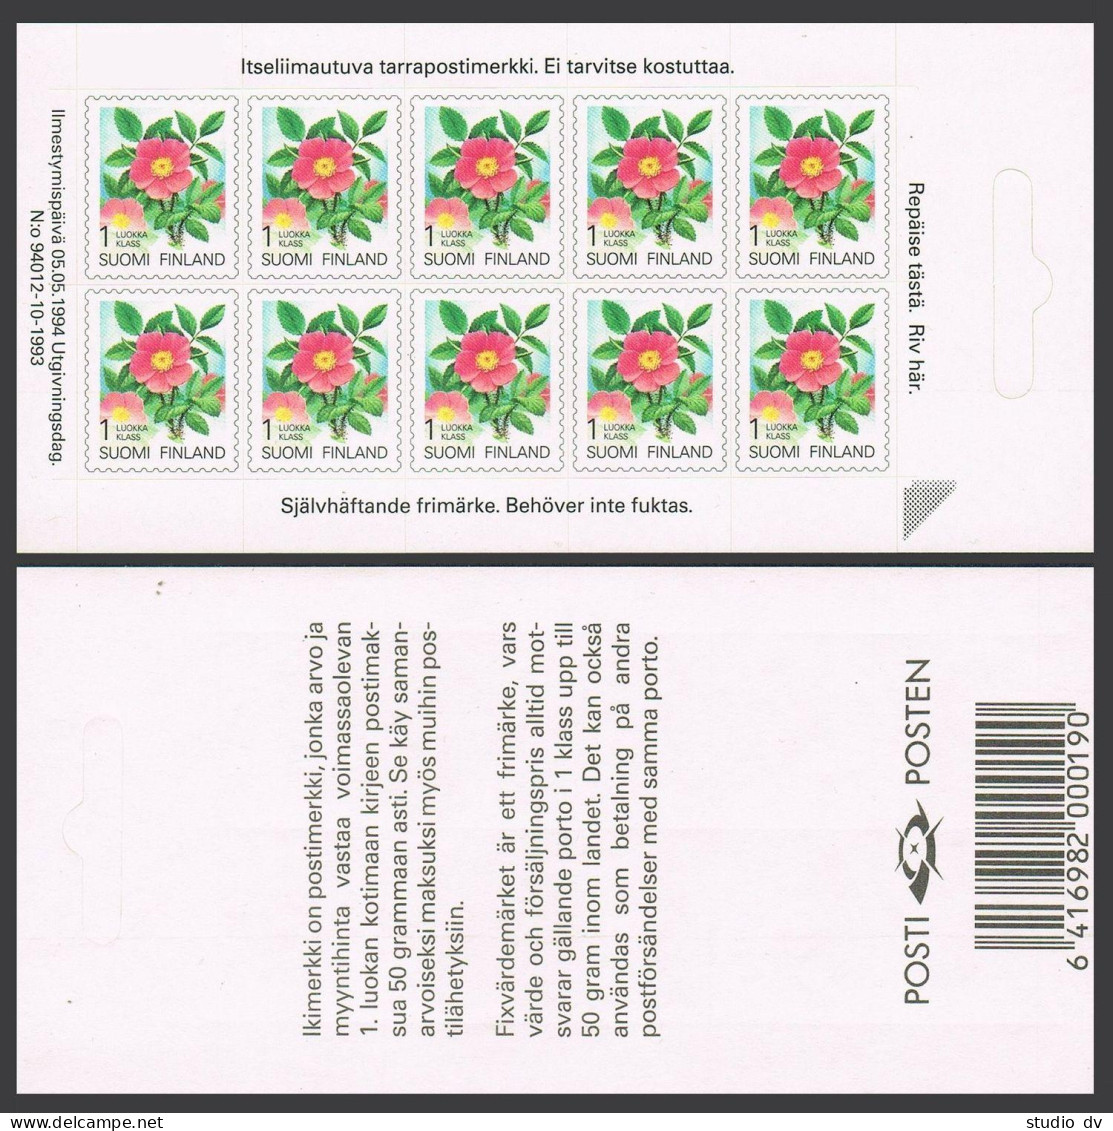 Finland 840 Sheet/10 Self-adhesive Stamps,MNH.Michel 1250Fb.Karelian Rose,1994. - Ongebruikt